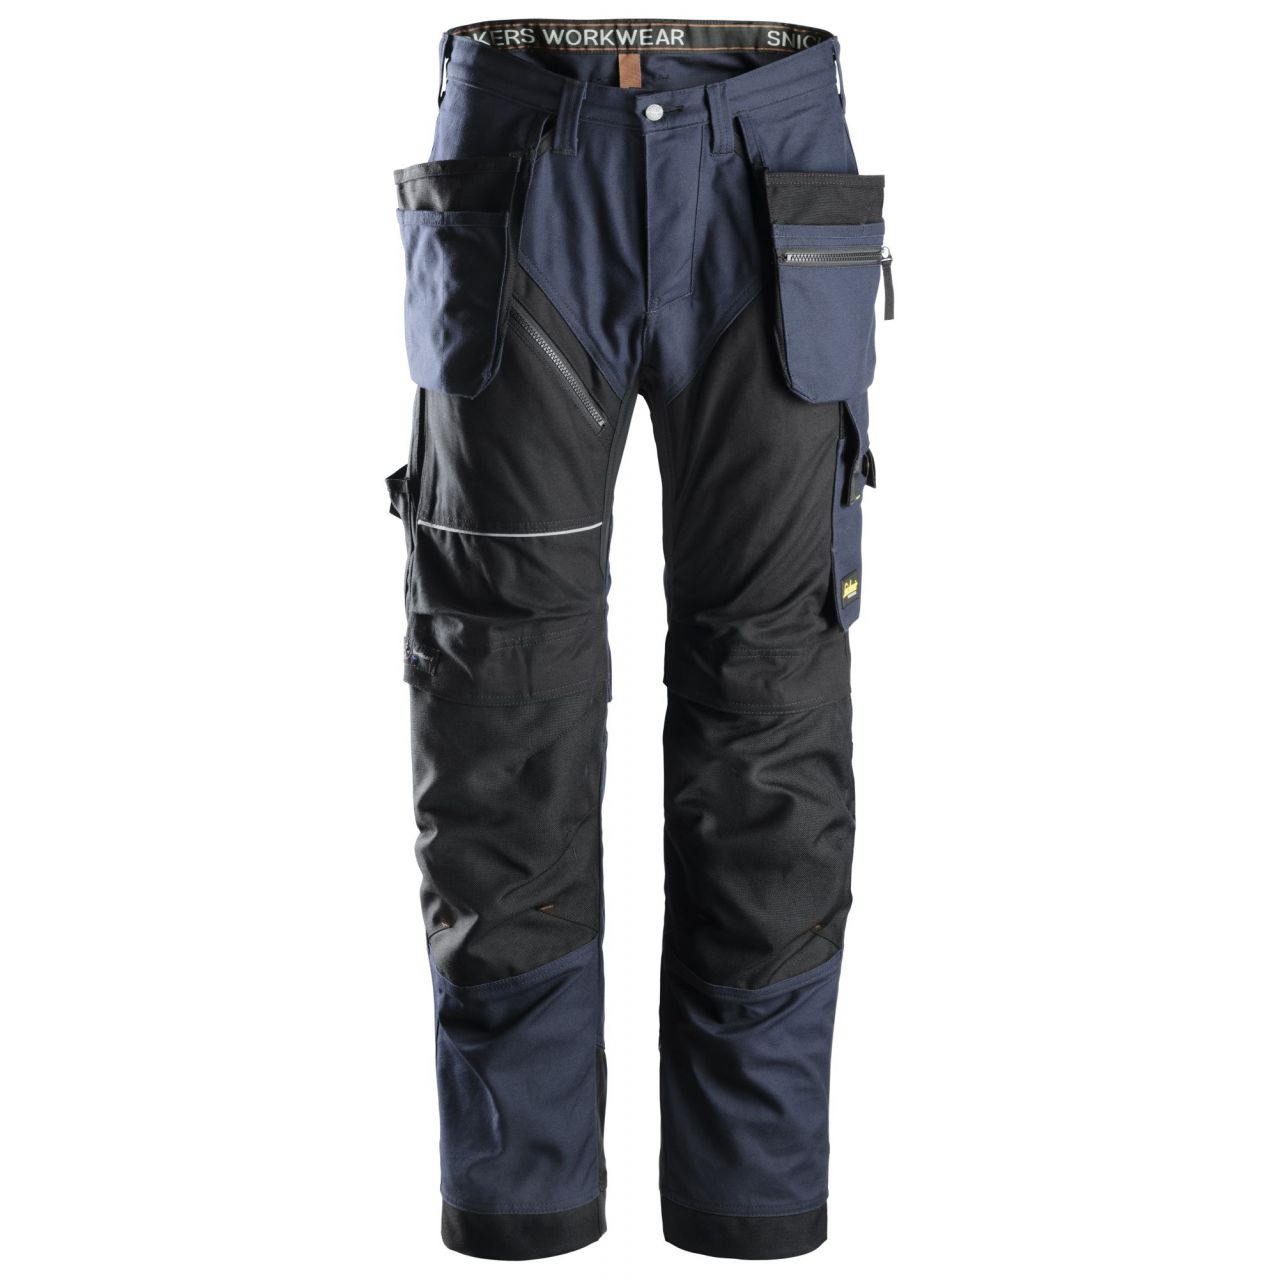 6215 Pantalón largo RuffWork Algodón con bolsillos flotantes azul marino-negro talla 156